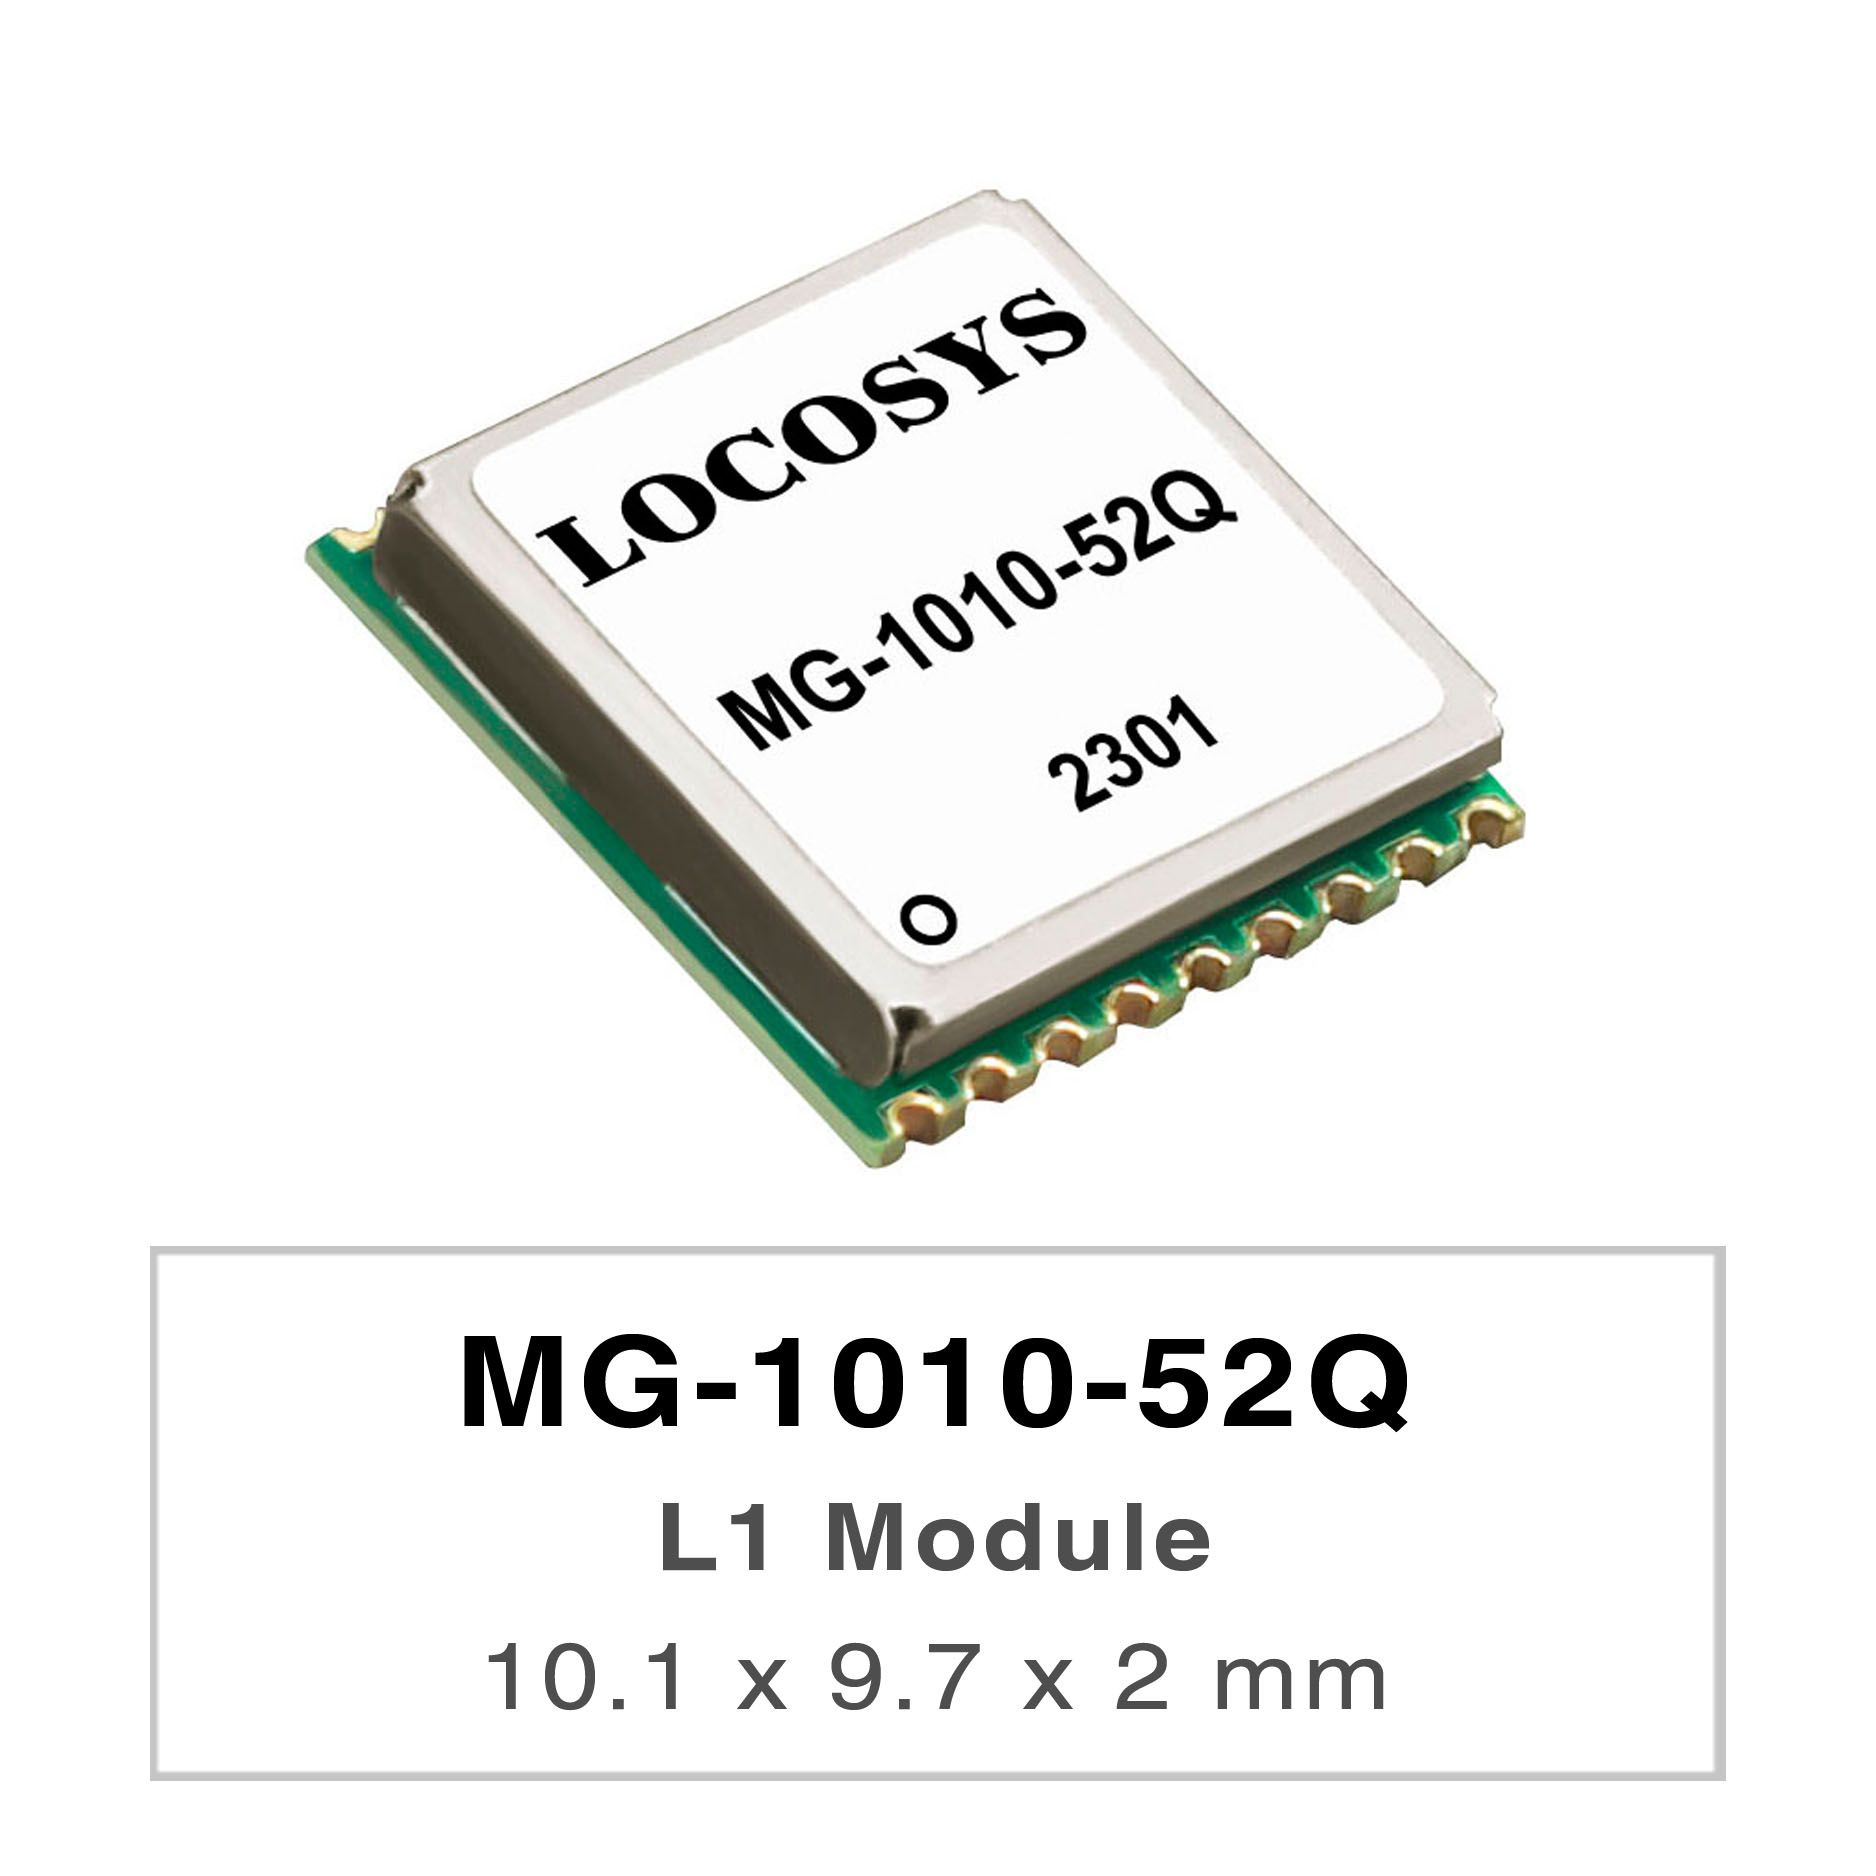 LOCOSYS MG-1010-52Qは完全なスタンドアロンGNSSモジュールです。